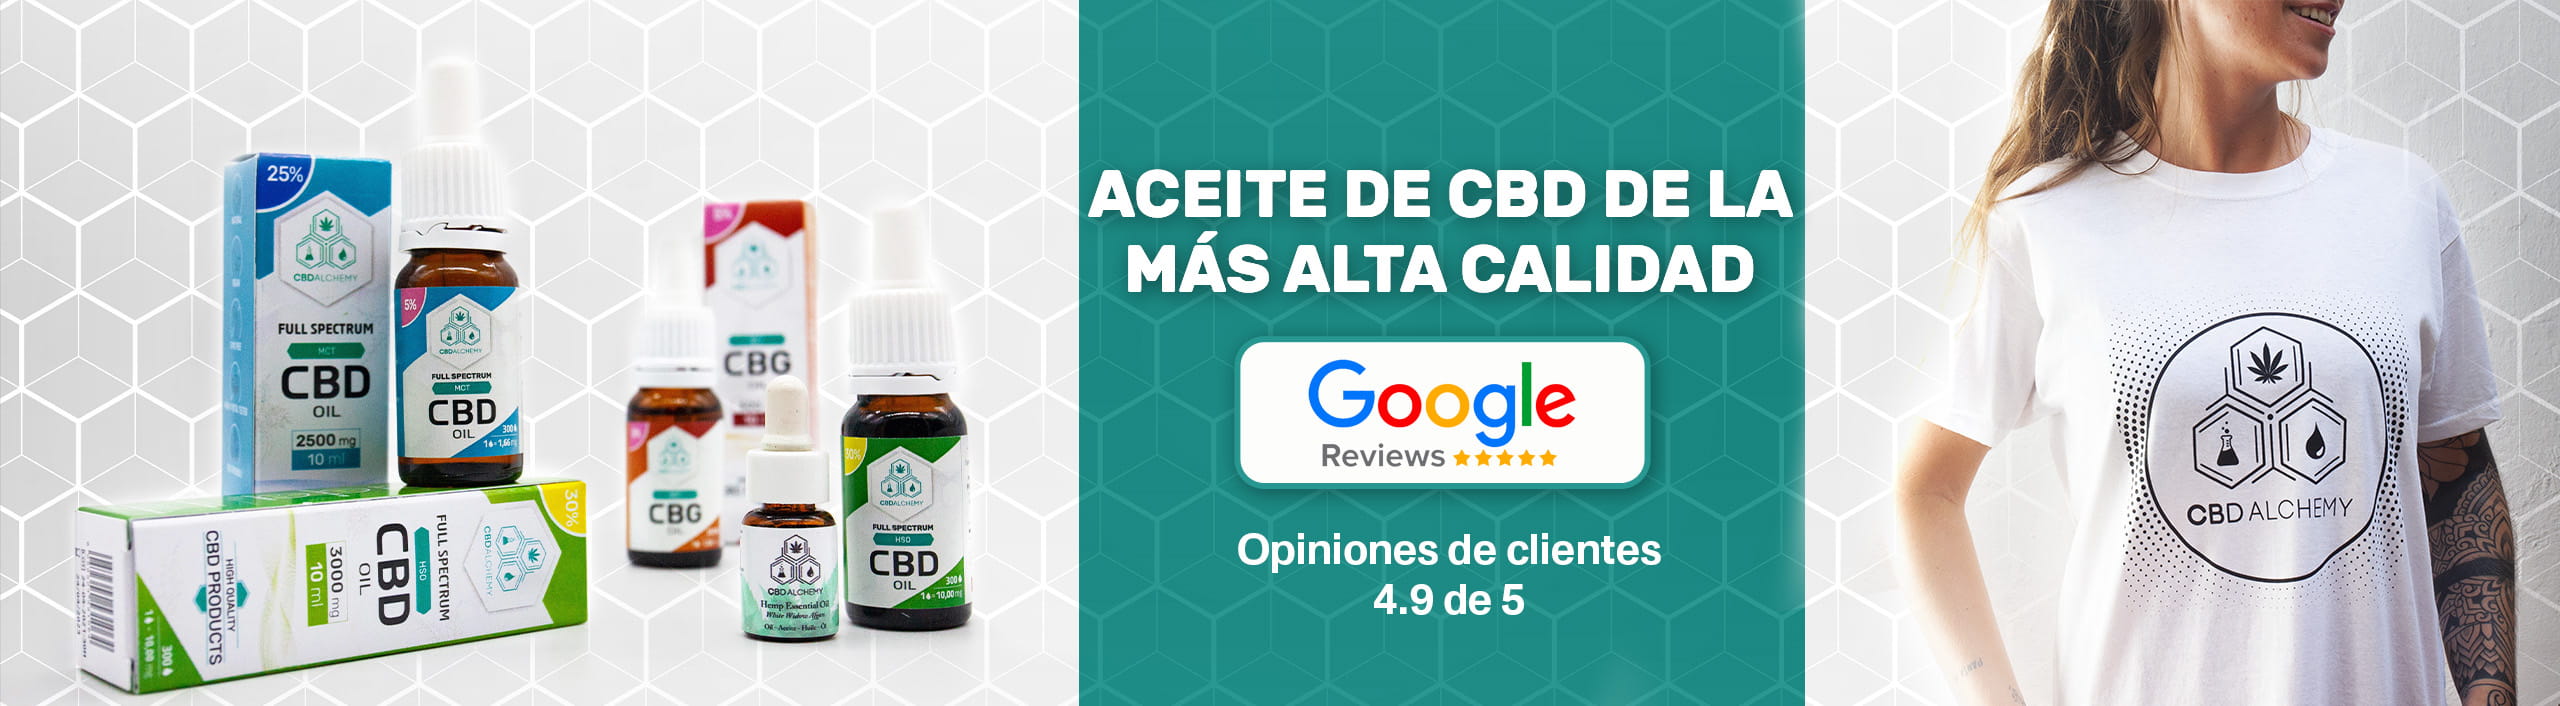 CBD Alchemy recibe elogios en Google My Business por sus aceites de CBD de alta calidad